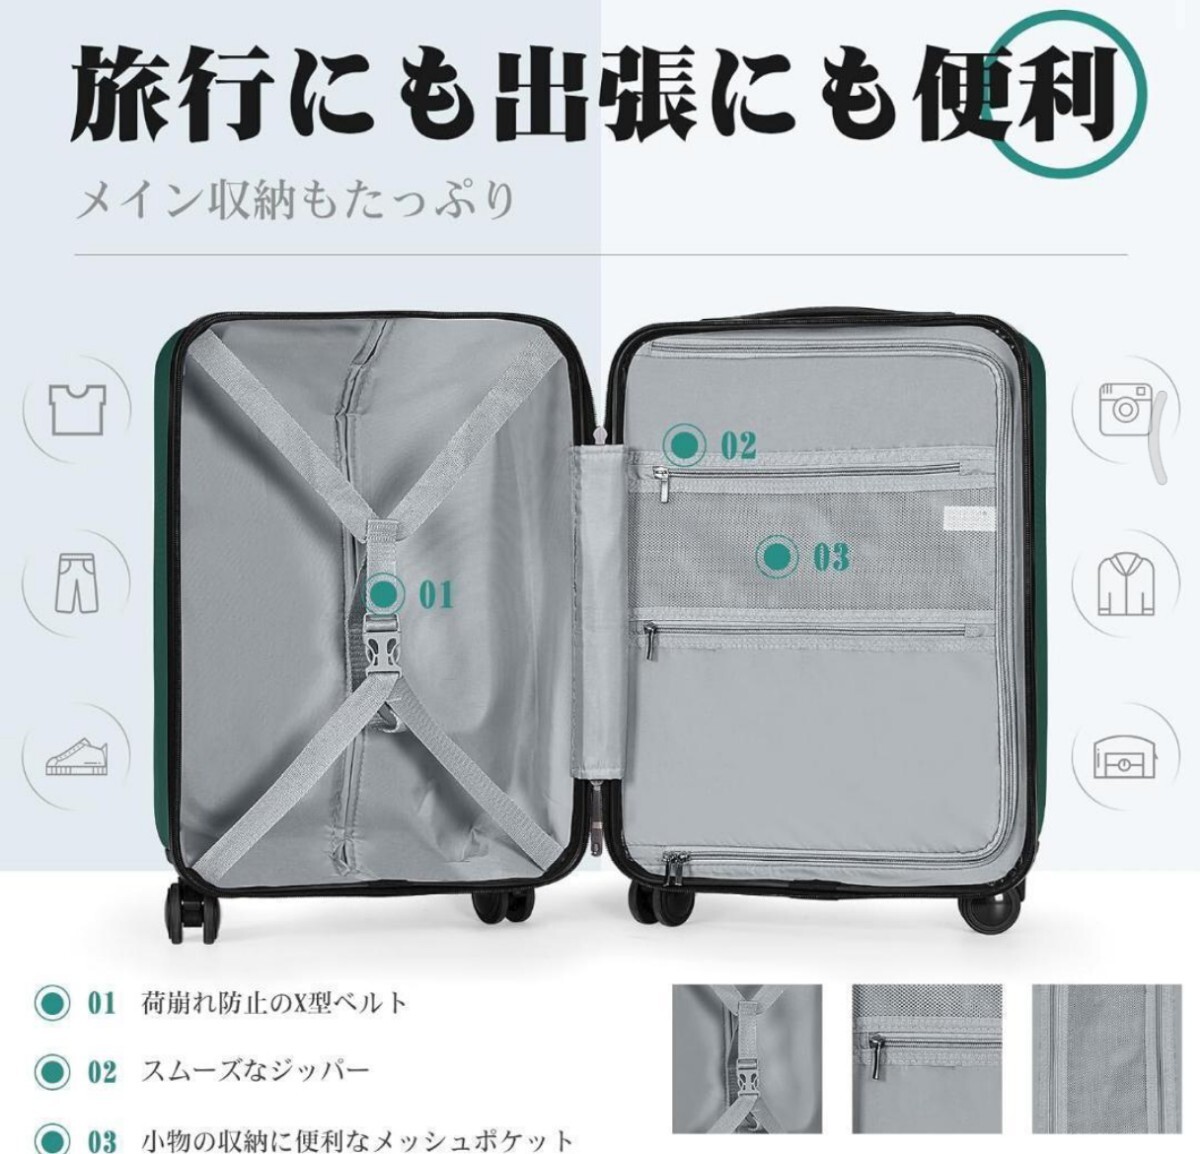  новый товар машина внутри принесенный [Krute] Carry кейс чемодан с функцией расширения . дорожная сумка дорожная сумка большая вместимость симпатичный TSA блокировка 